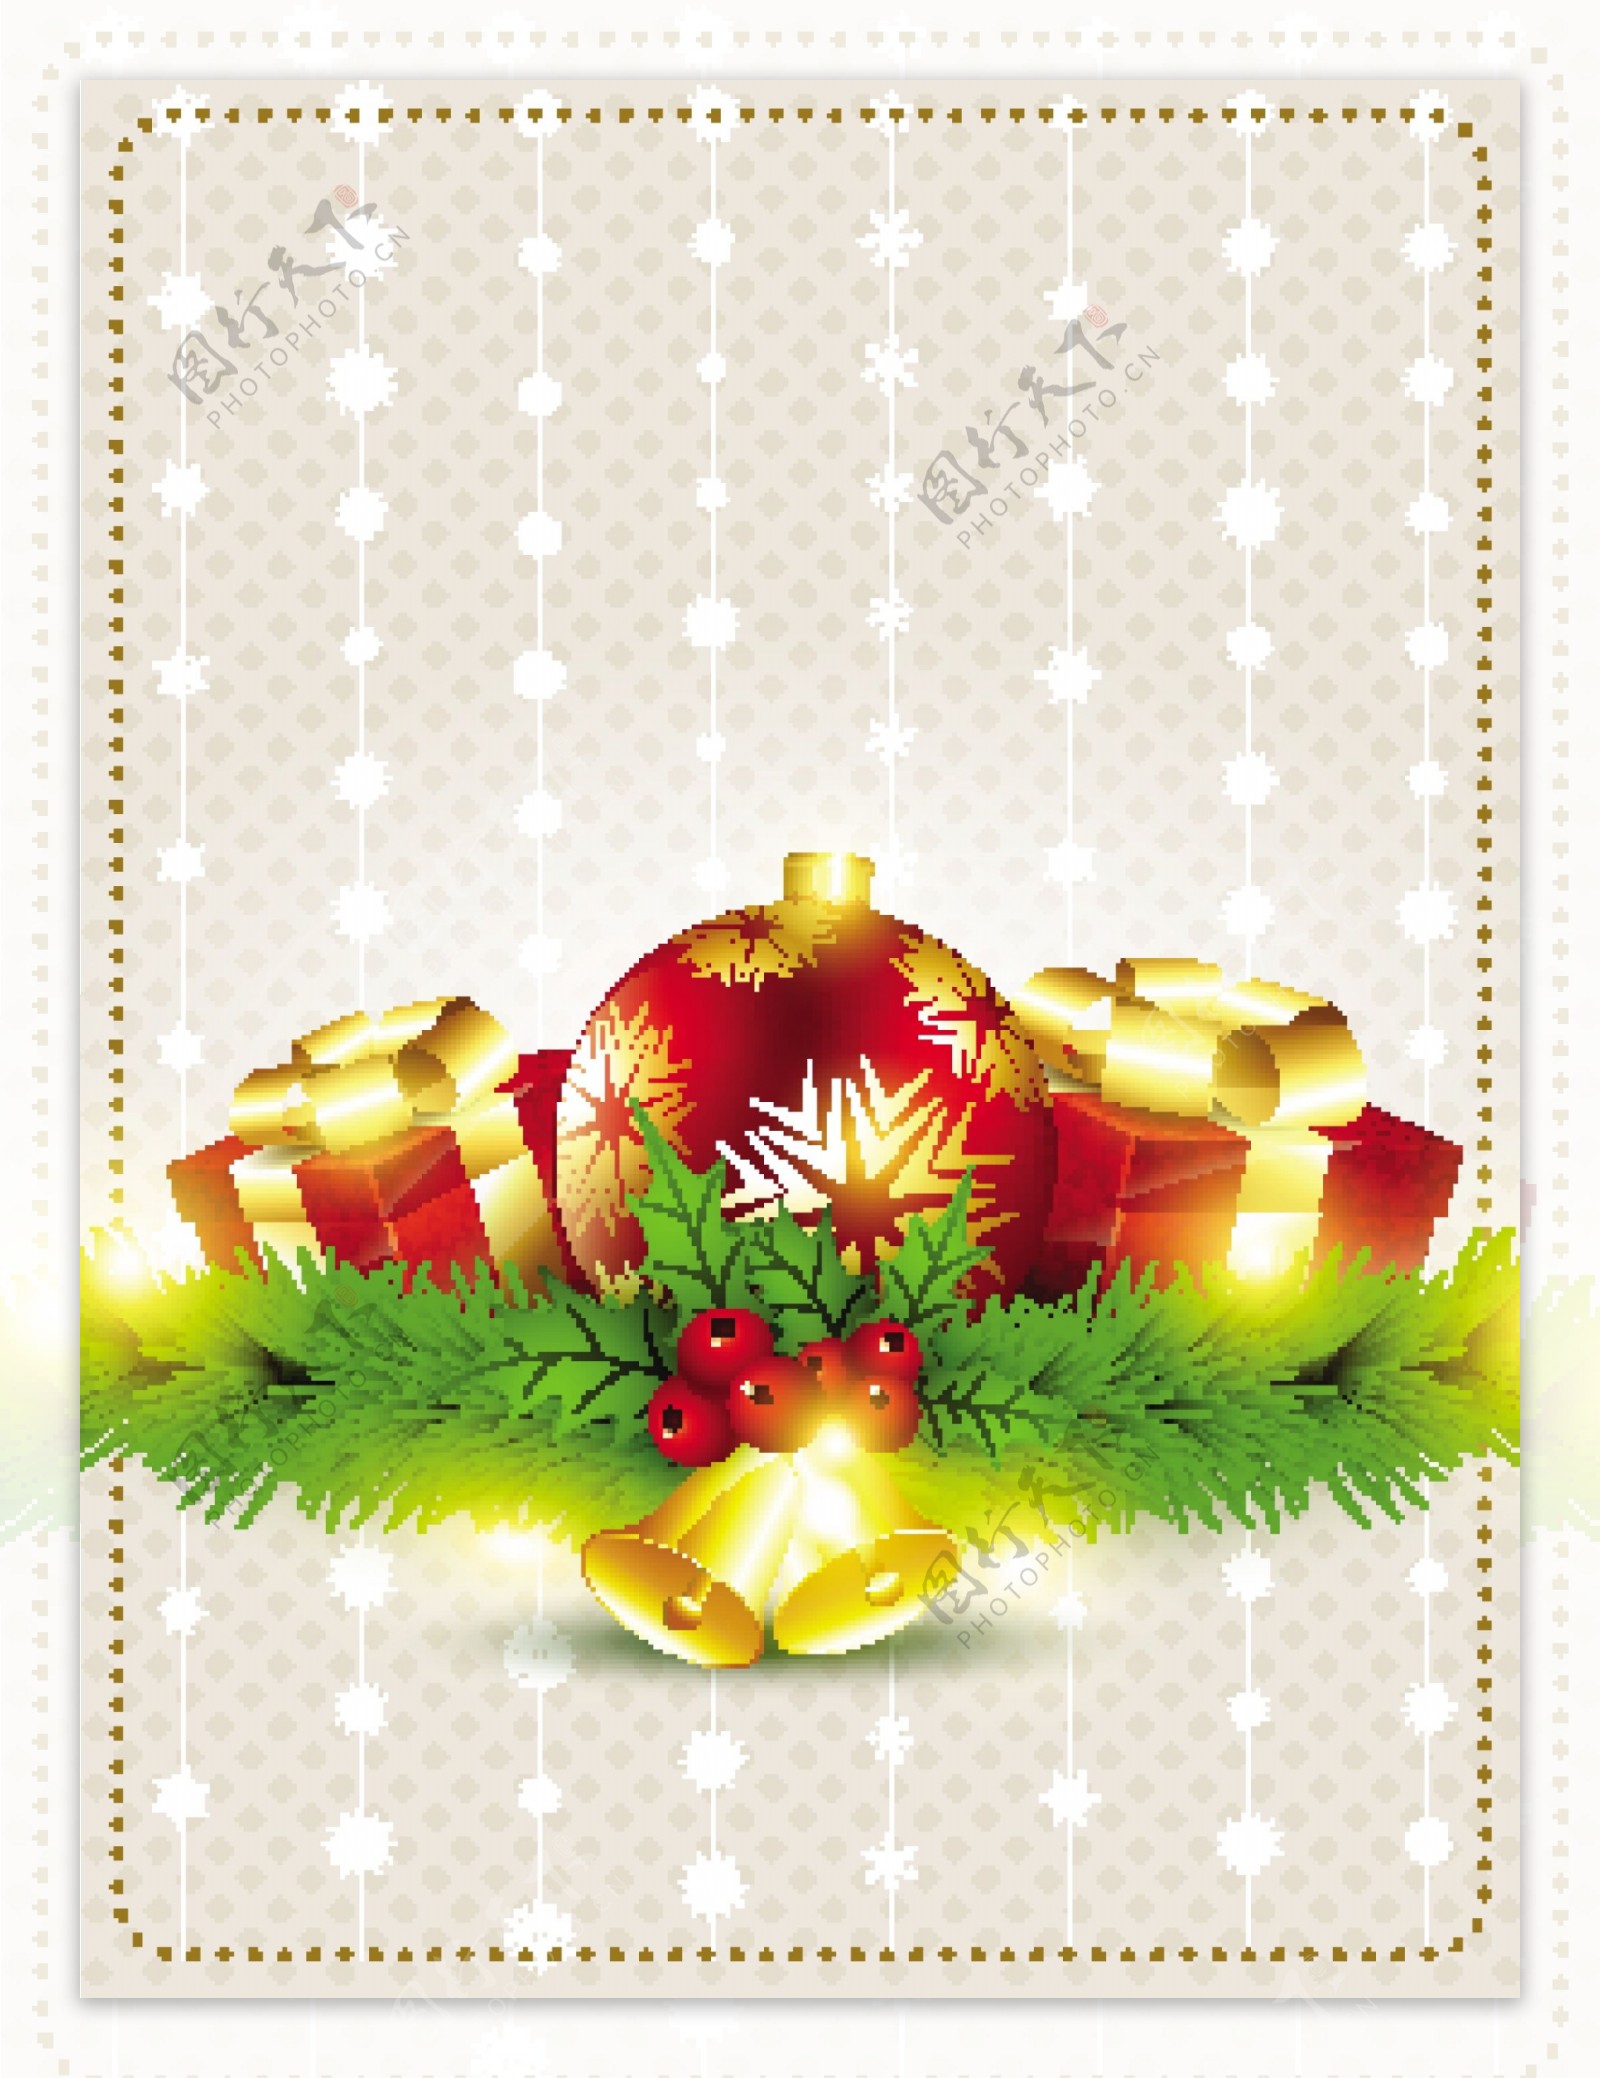 松树枝圣诞礼物金色铃铛矢量图图片